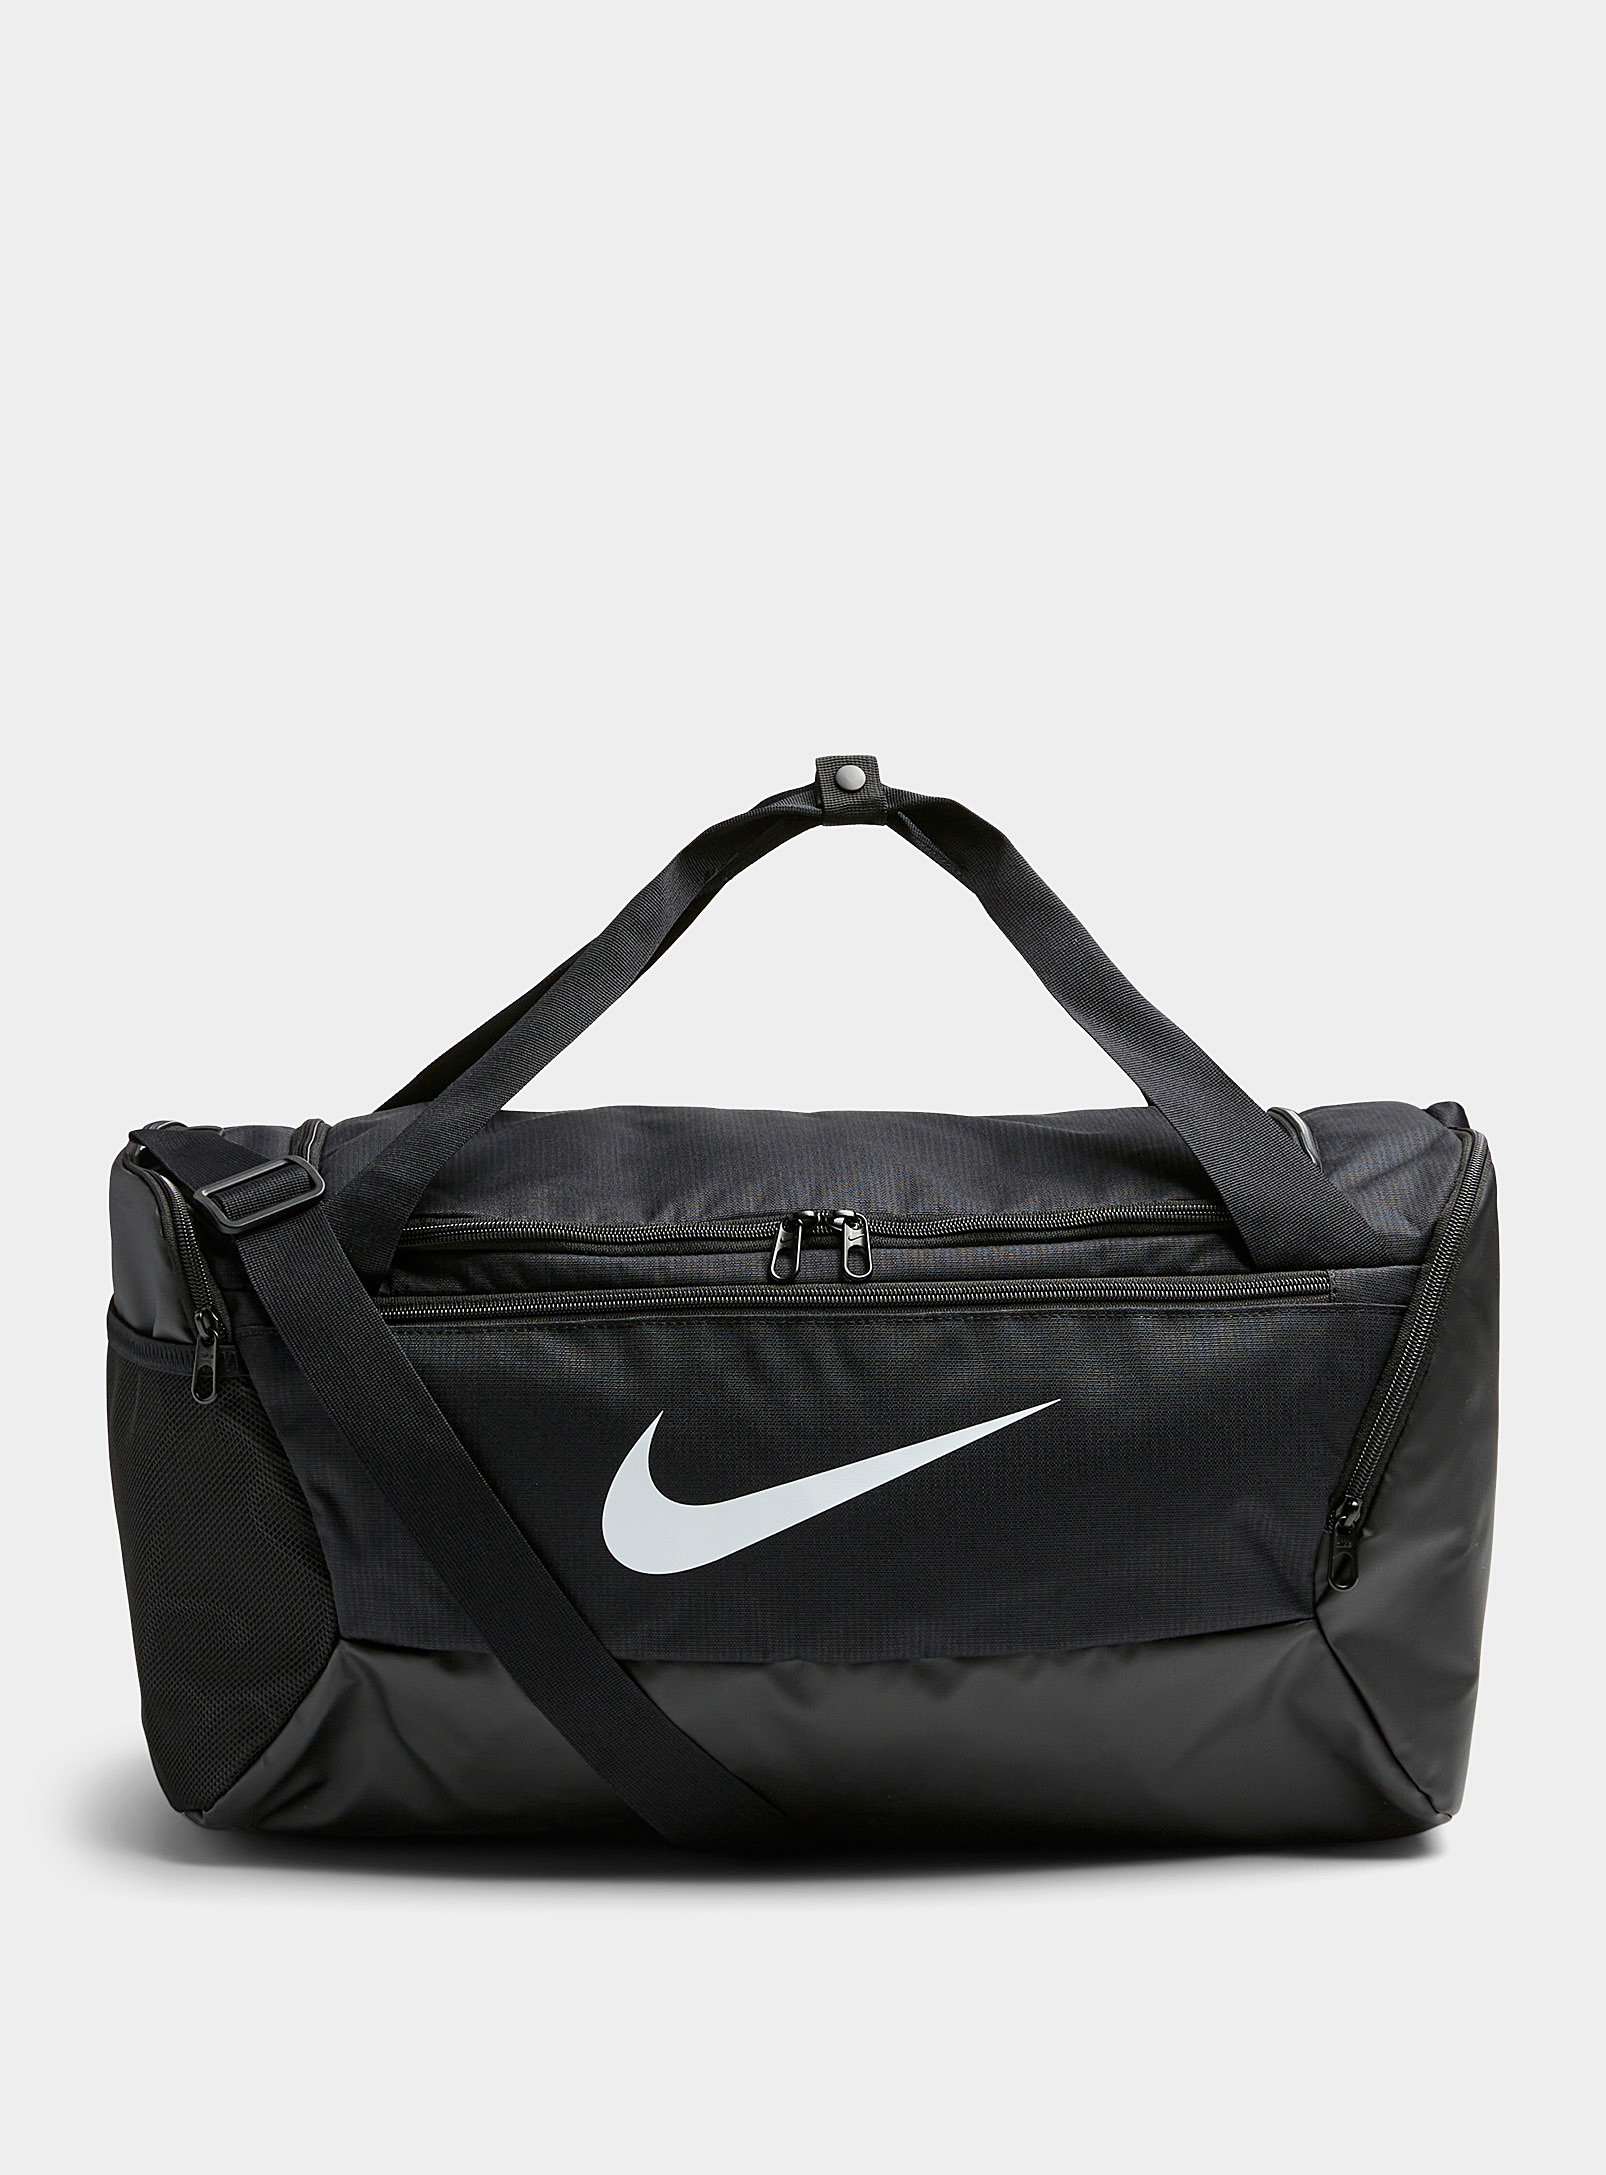 Nike - Men's Brasilia duffle bag